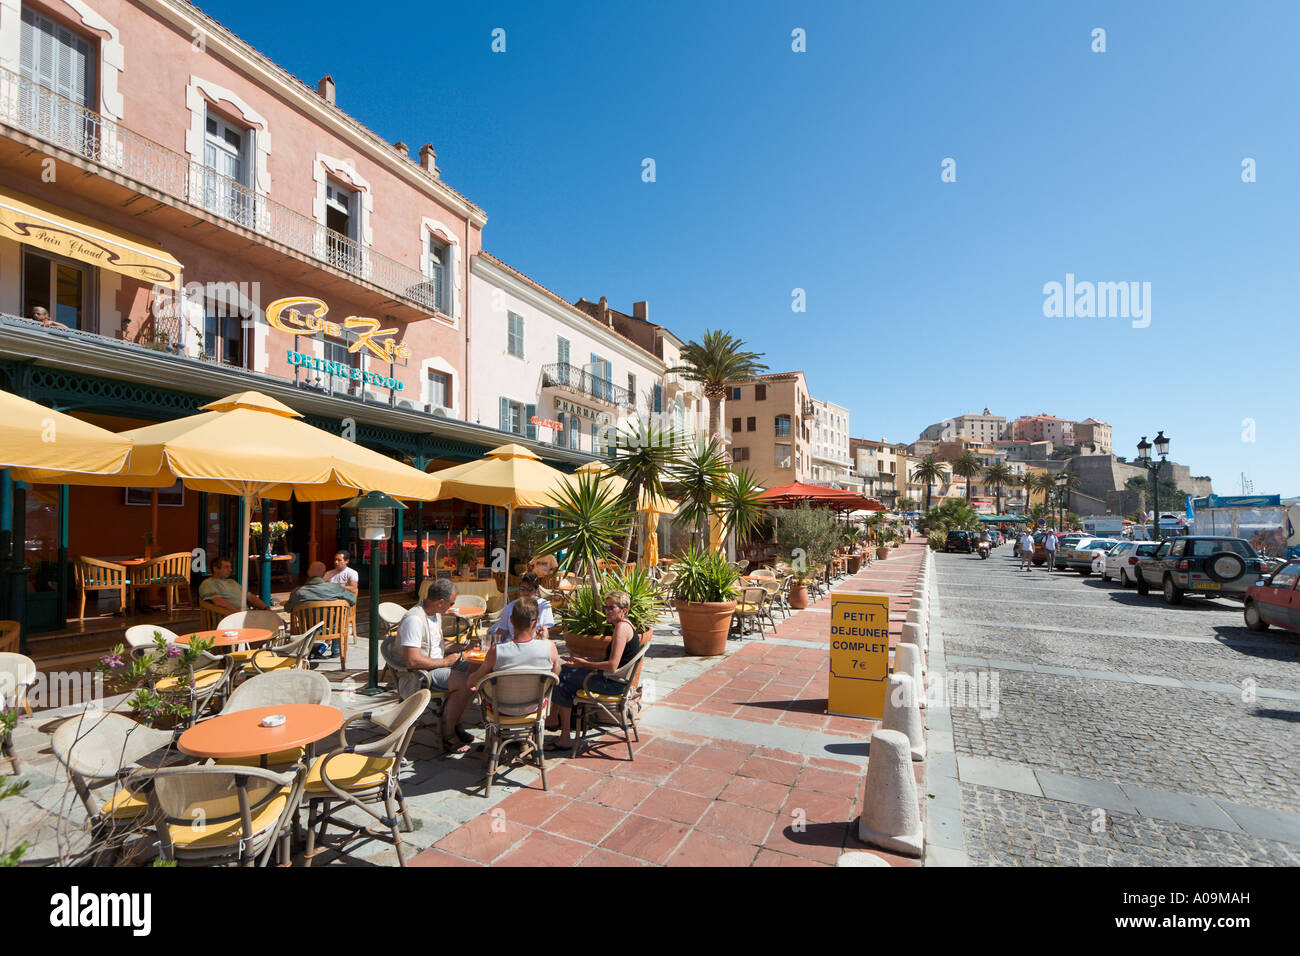 Harbourfront Restaurant mittags mit der Zitadelle in der Ferne, Calvi, La Balagne, Korsika, Frankreich Stockfoto